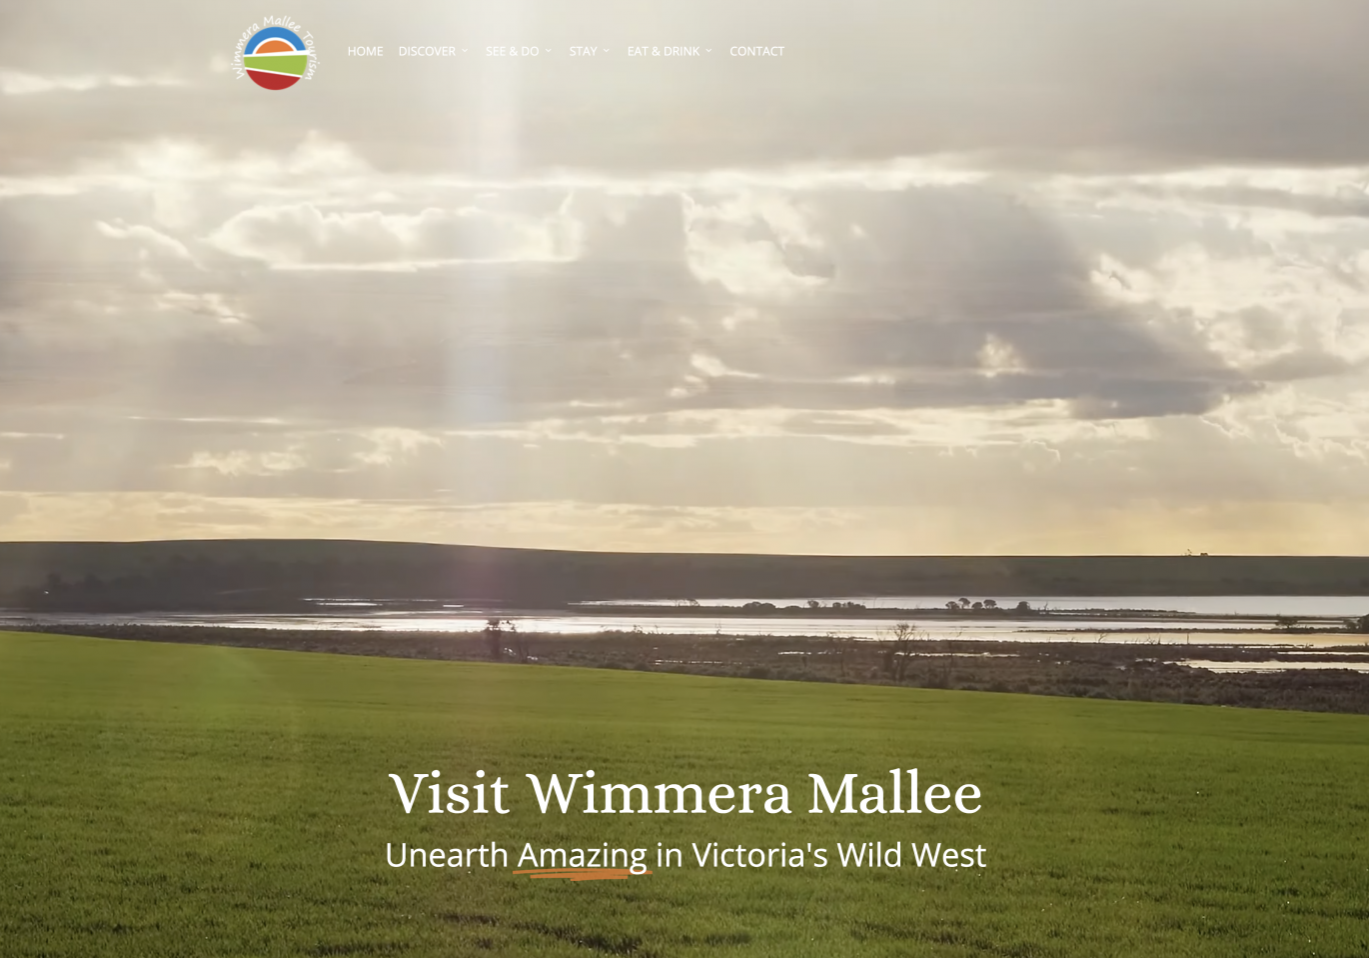 Visit Wimmera Mallee